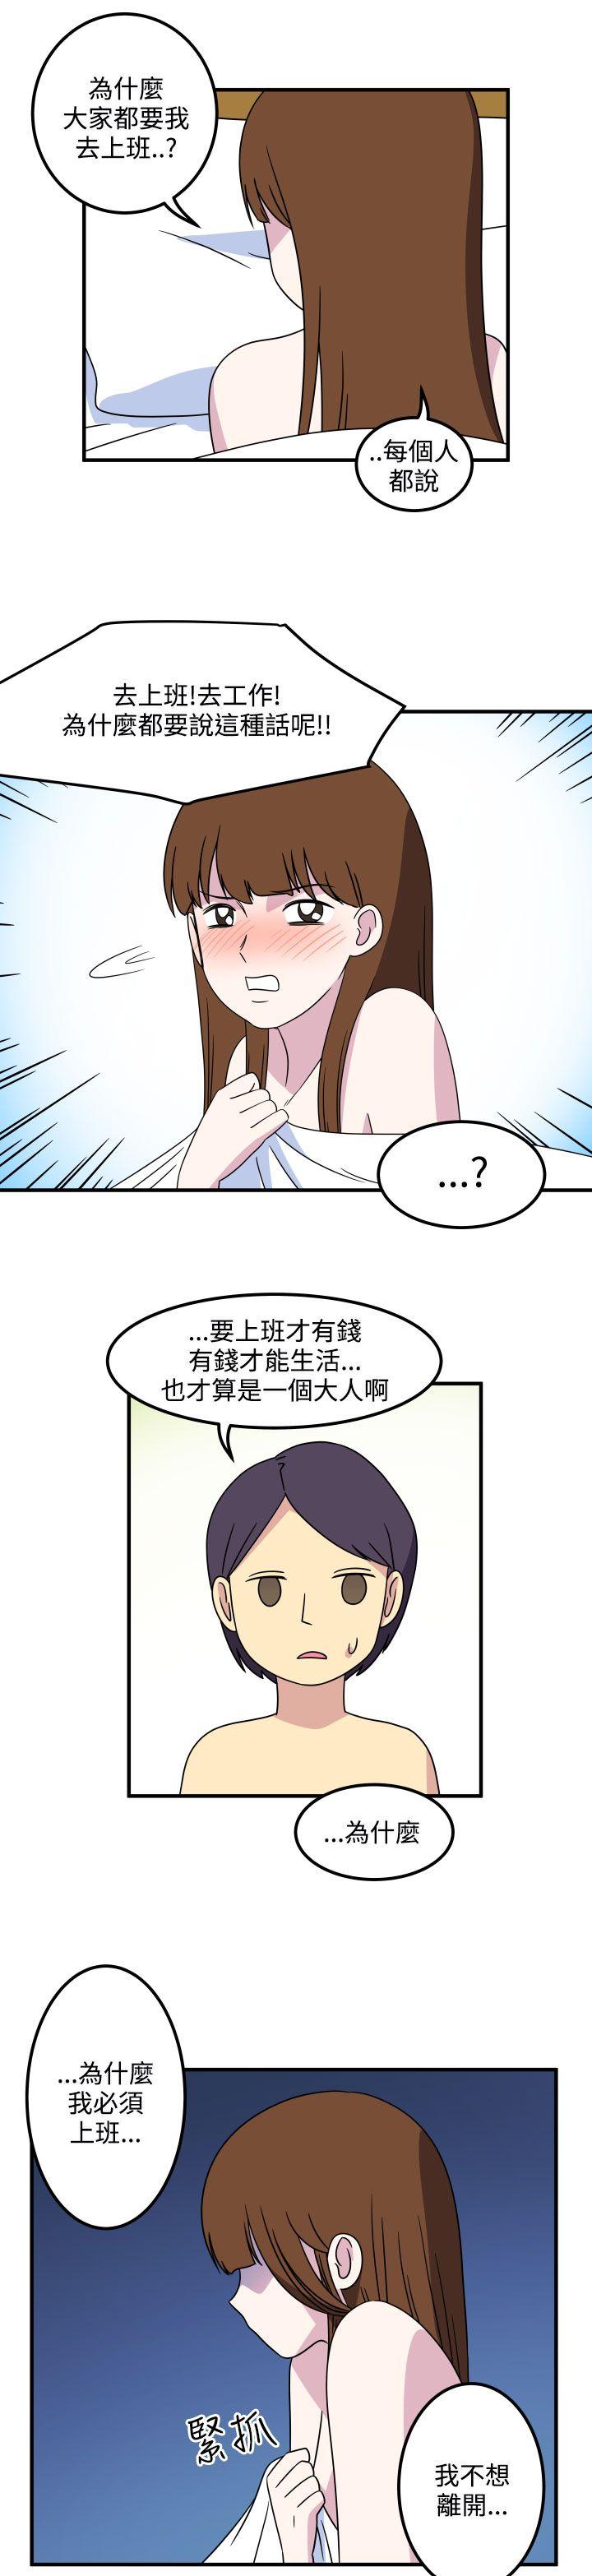 韩国污漫画 腹黑女的異想世界 第23话 3